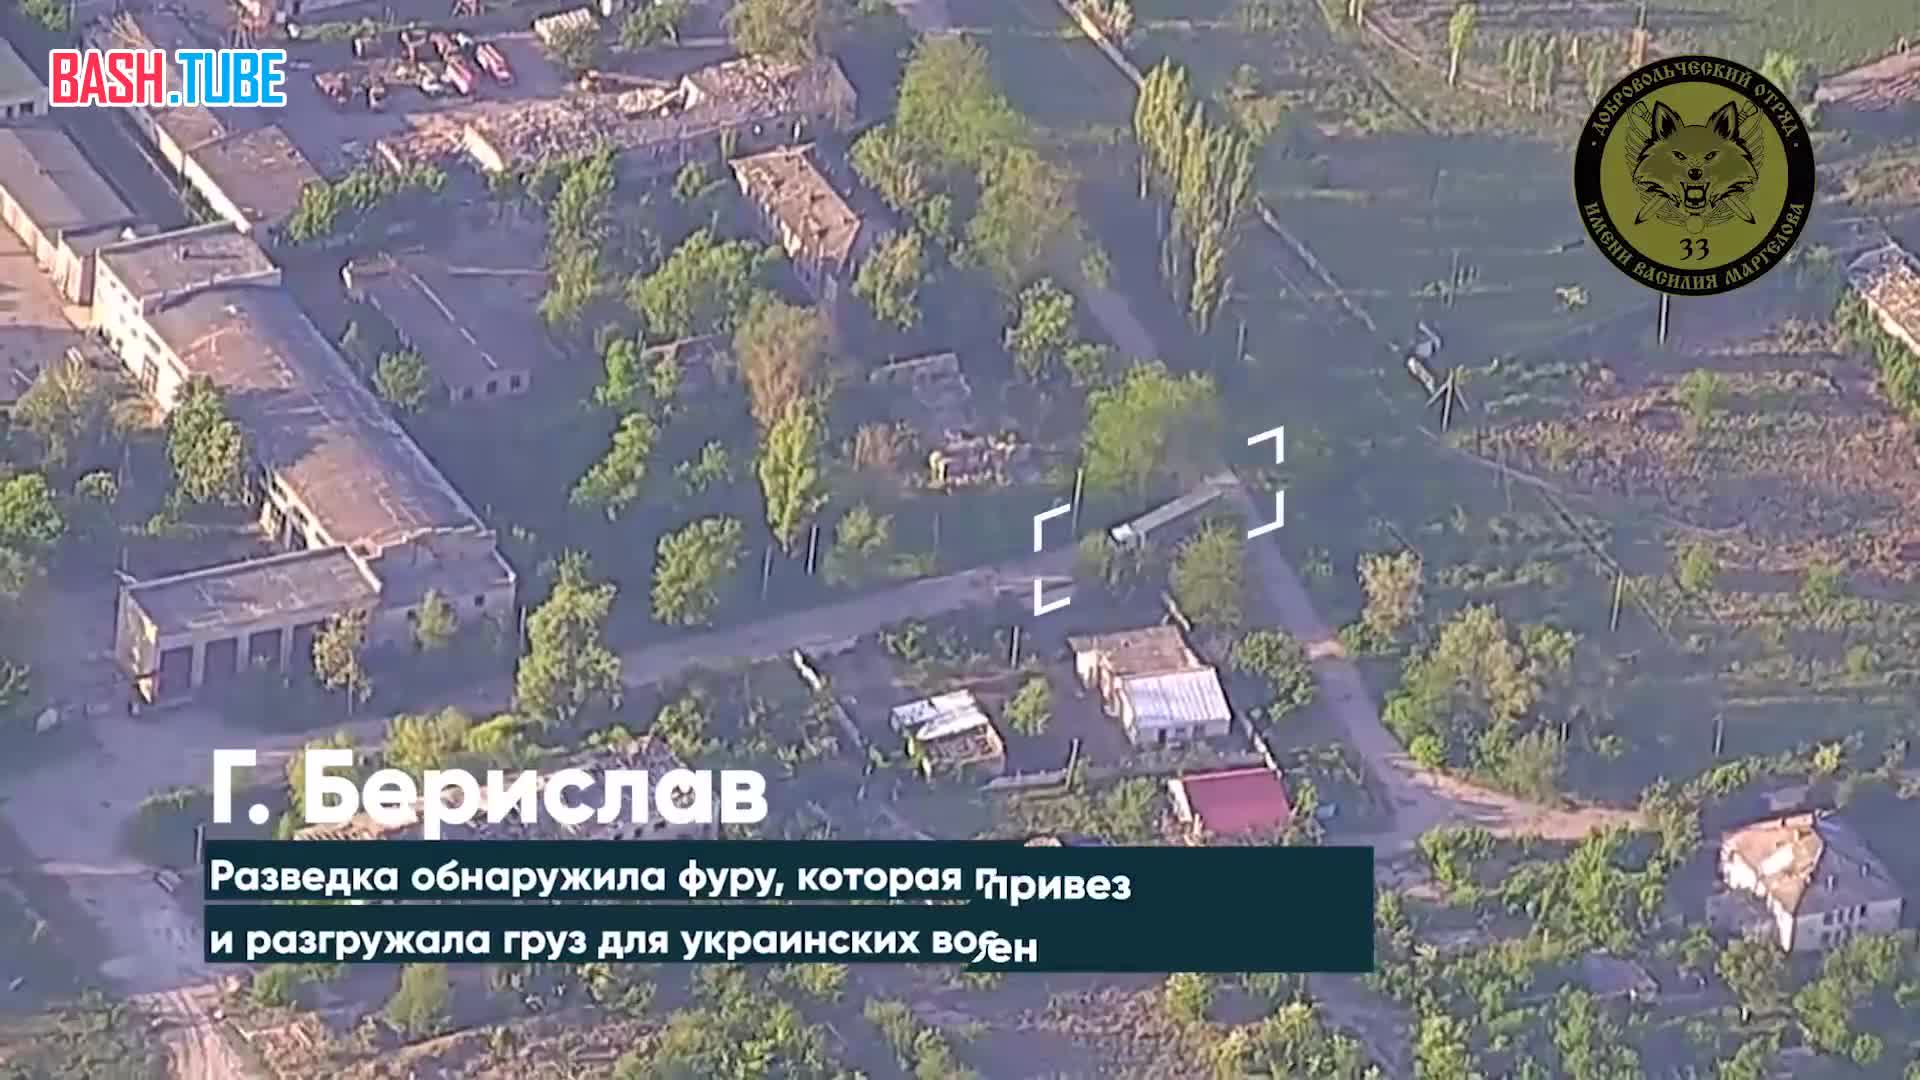  Херсонское направление - прилет FPV-дрона по украинской фуре с военным грузом в Бериславе (правобережье Днепра)